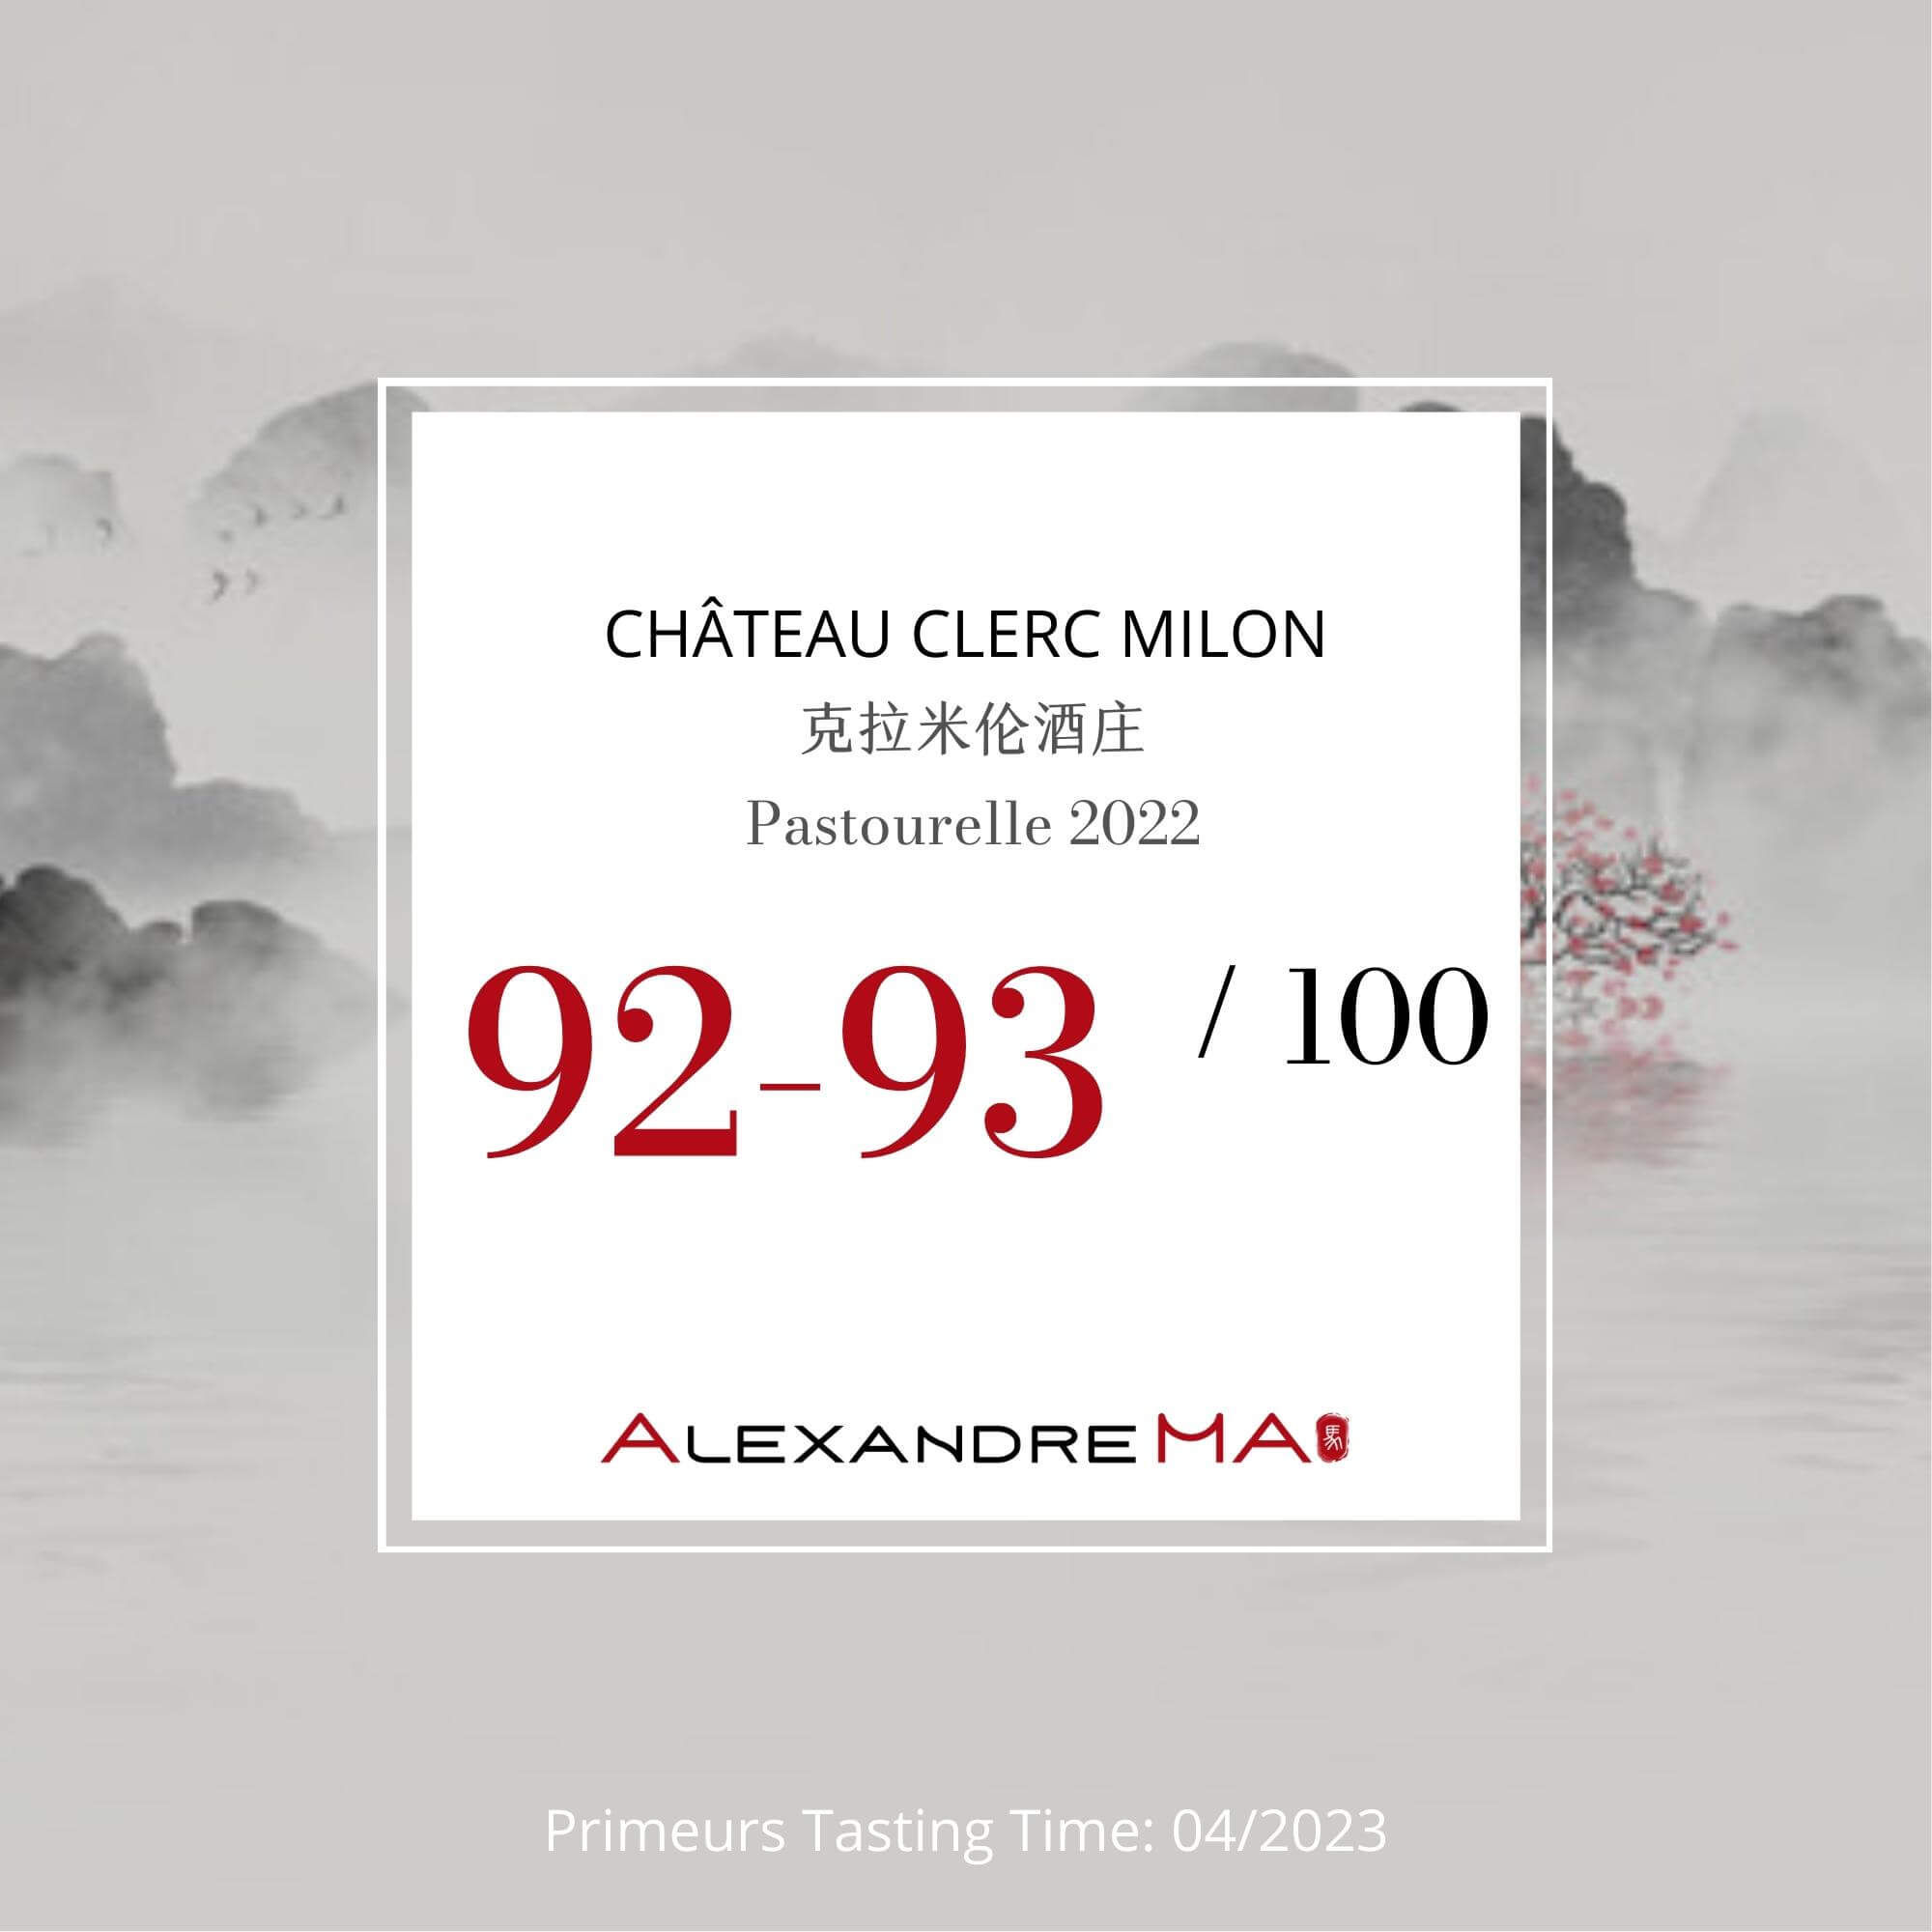 Château Clerc Milon-Pastourelle 2022 Primeurs - Alexandre MA